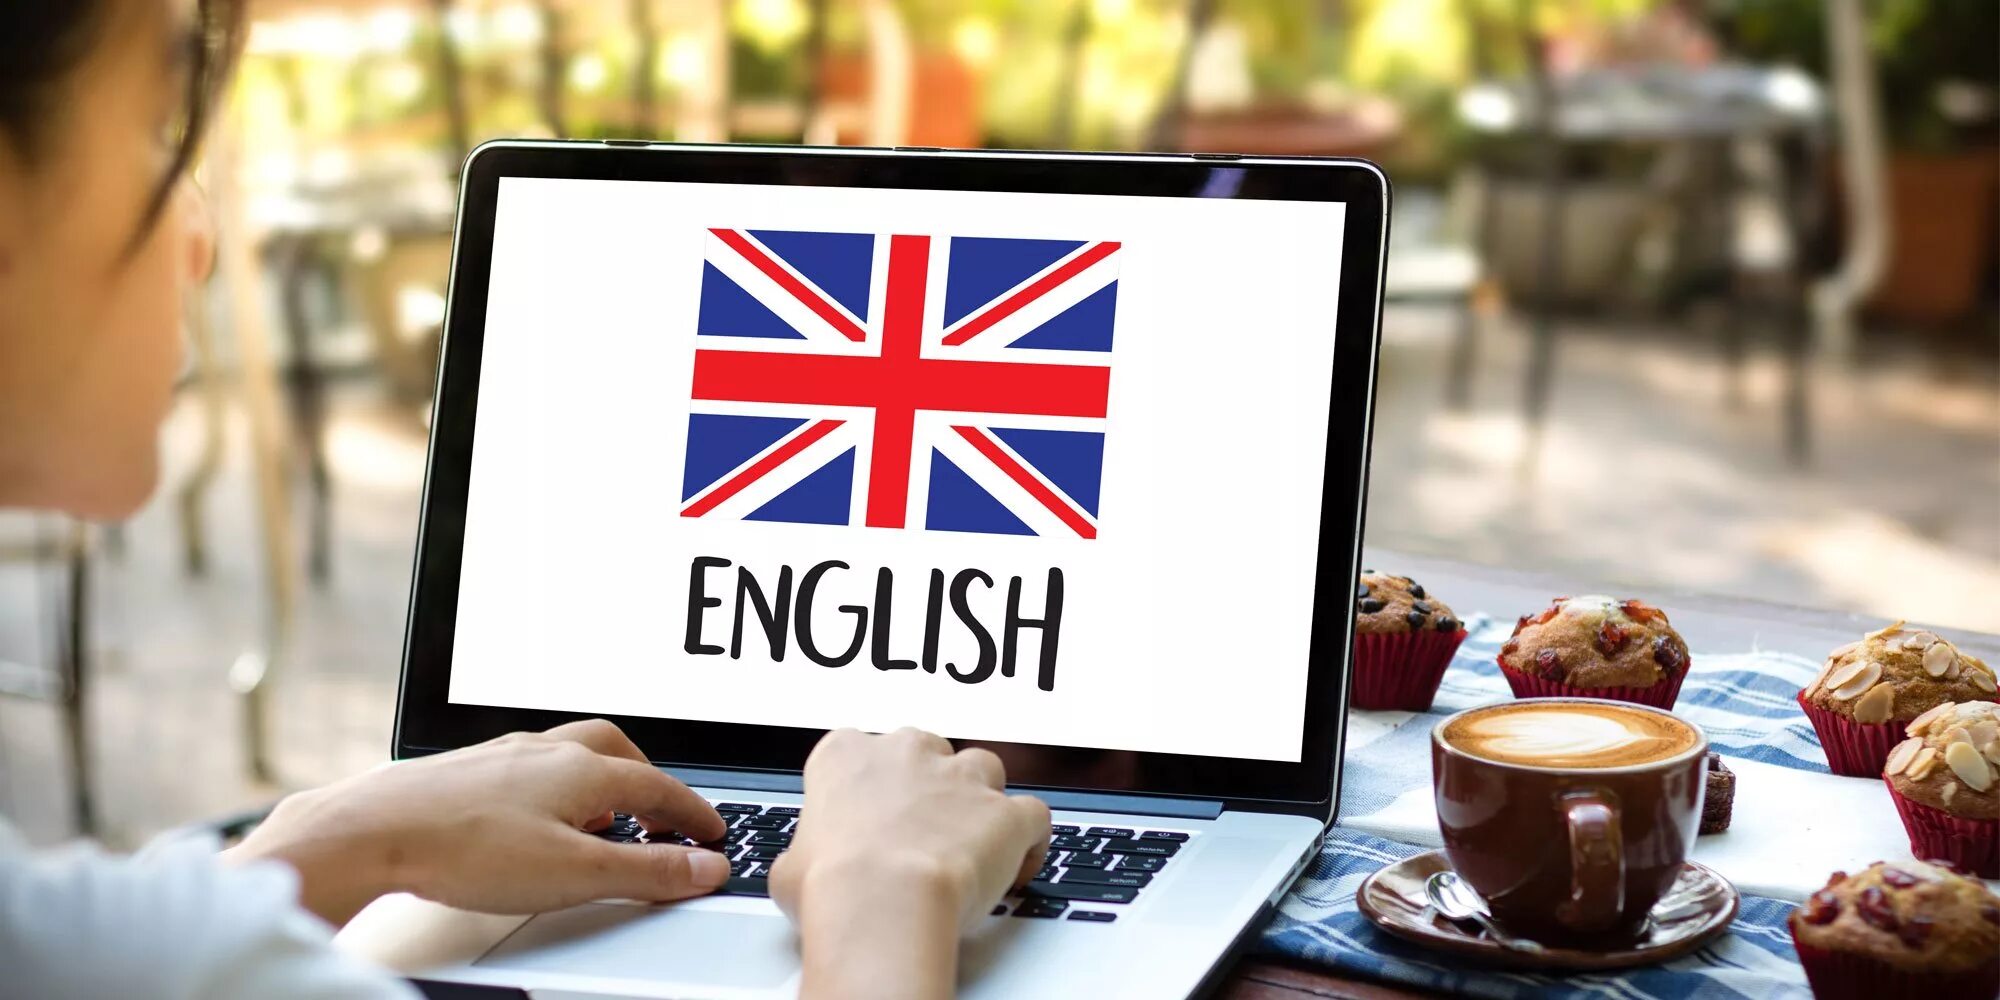 Enter english. Английский язык. Изучение английского. Компьютер и иностранные языки. Изучаем английский.